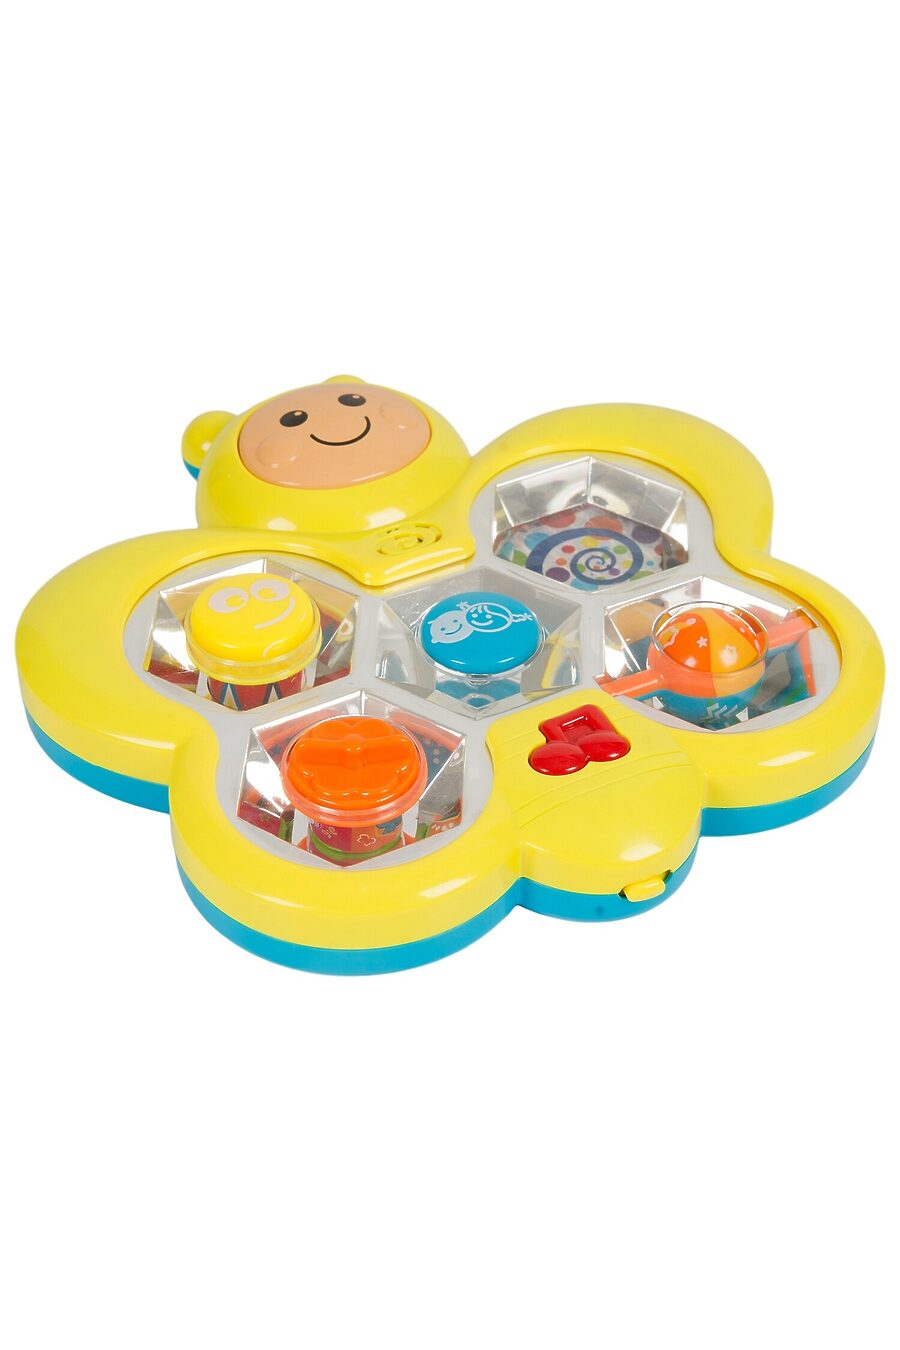 Обучающая игрушка для детей BONNA 718628 купить оптом от производителя. Совместная покупка игрушек в OptMoyo